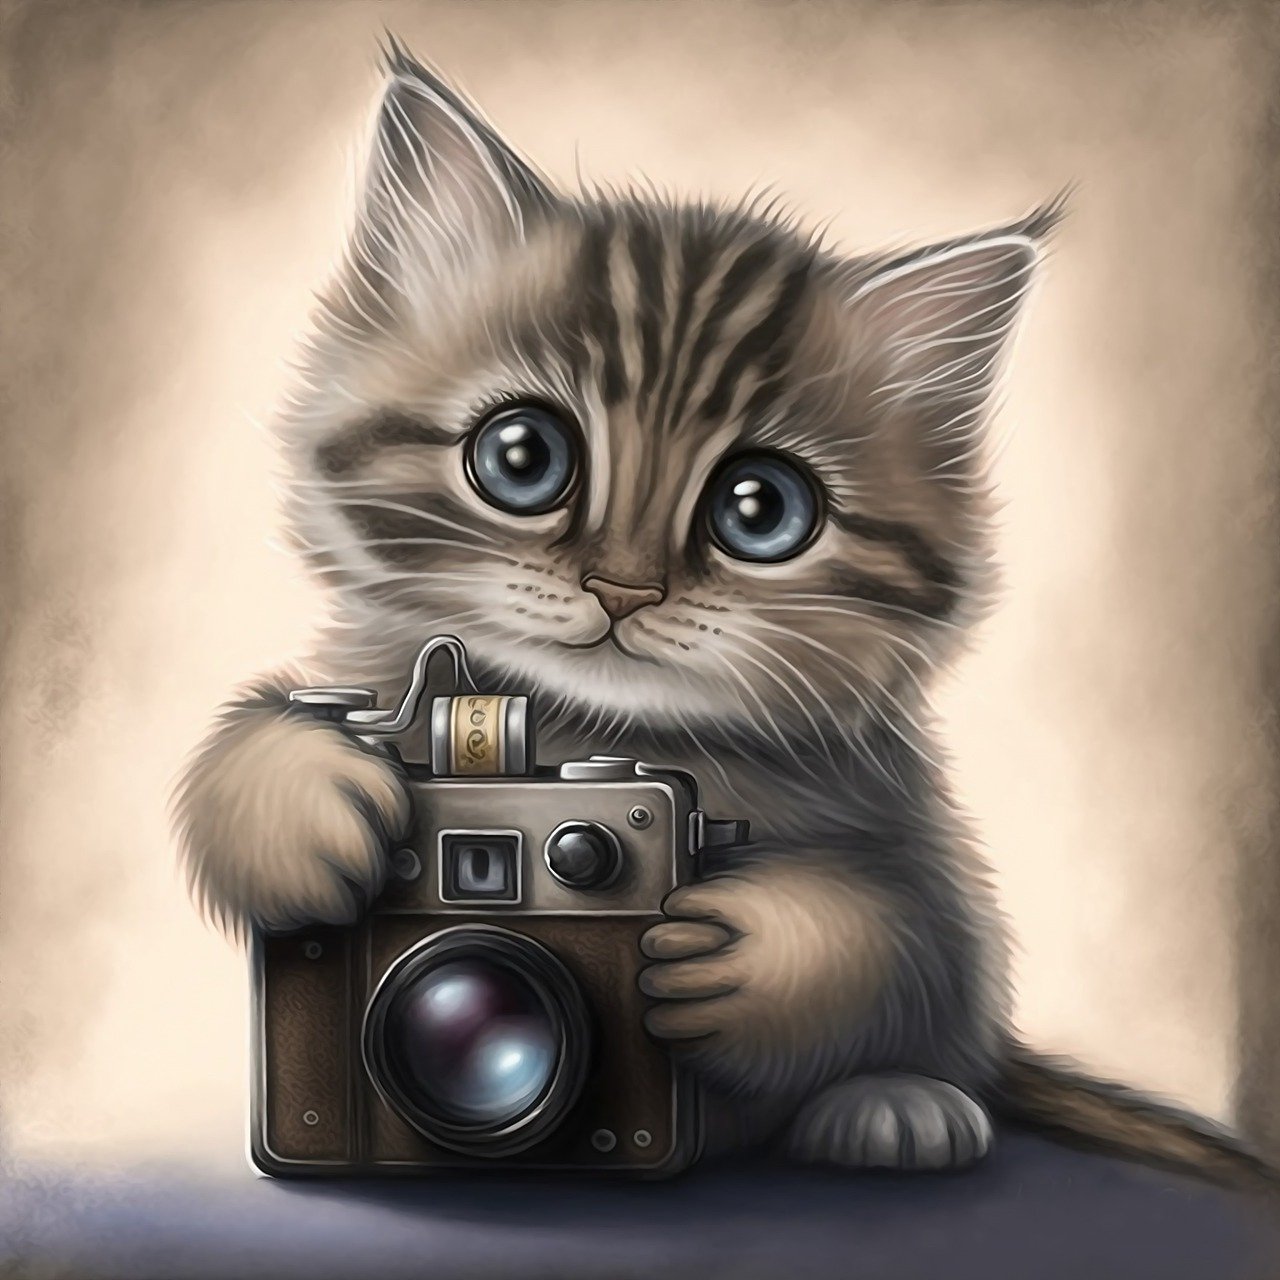 Where do you do Pet Portraits?